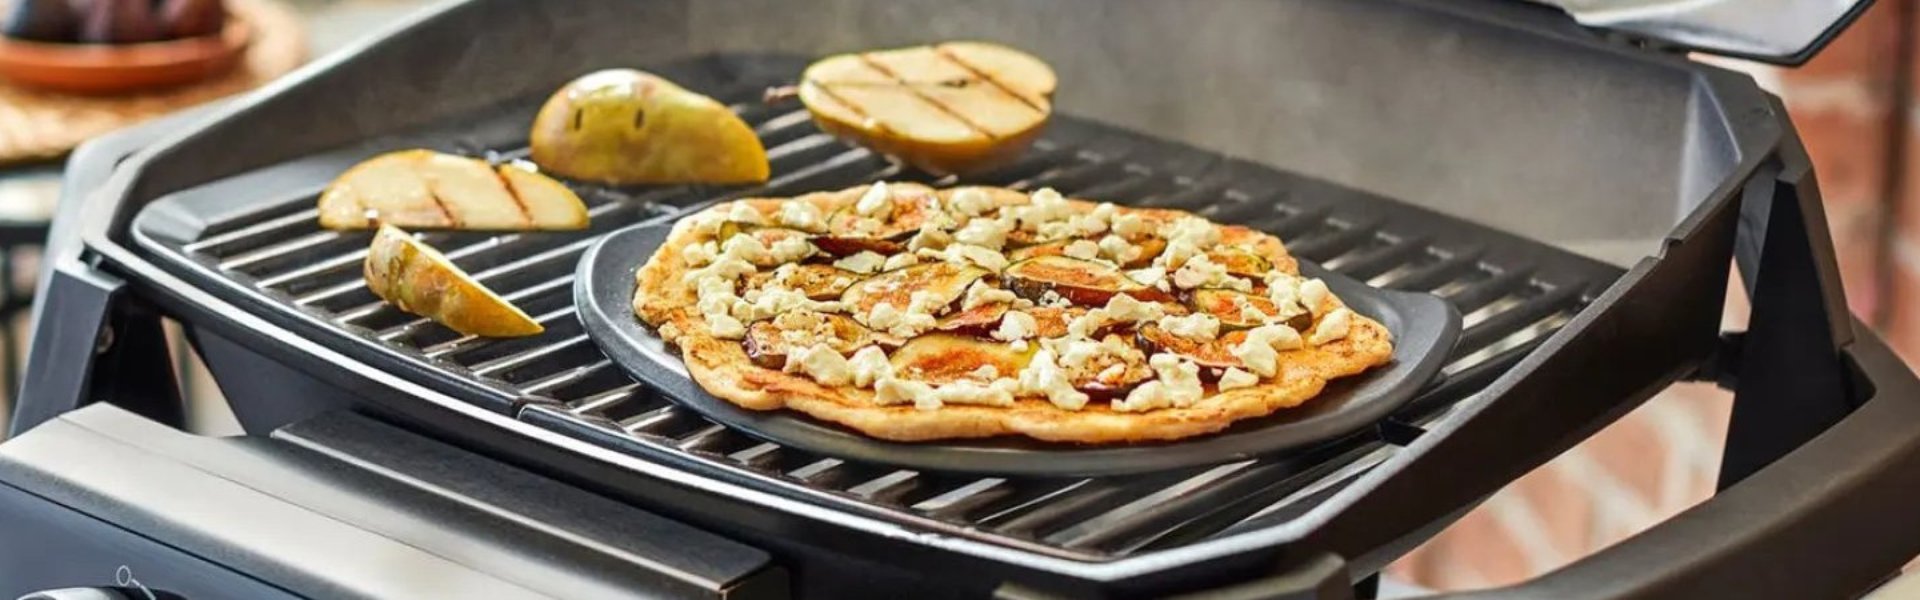 Näin grillaat pizzaa pizzakivellä hiiligrillissä ja kaasugrillissä